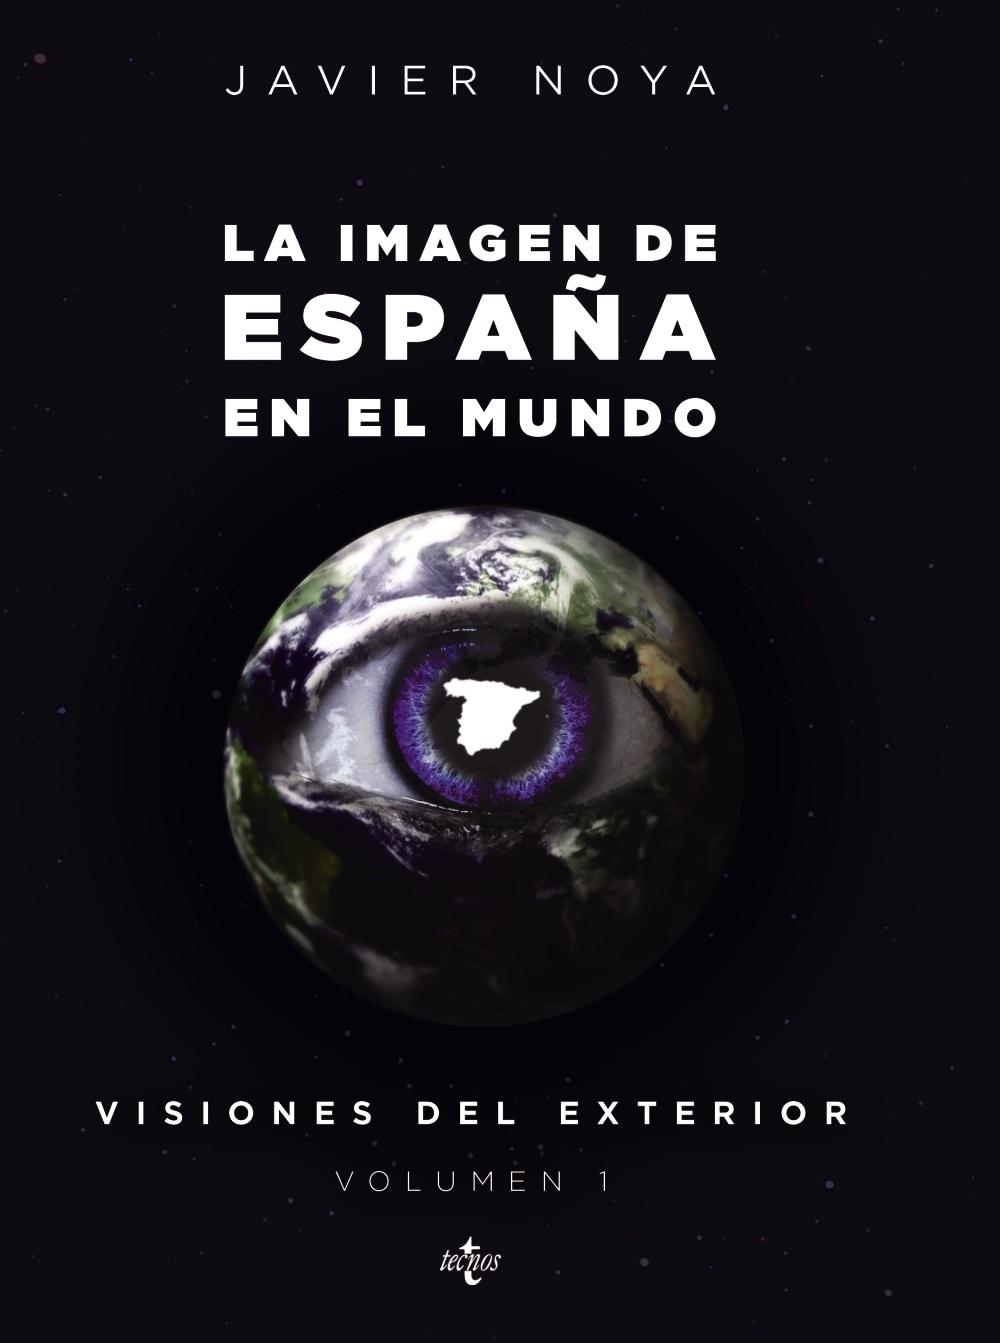 Visiones en el Exterior Vol.I "La Imagen de España en el Mundo". 